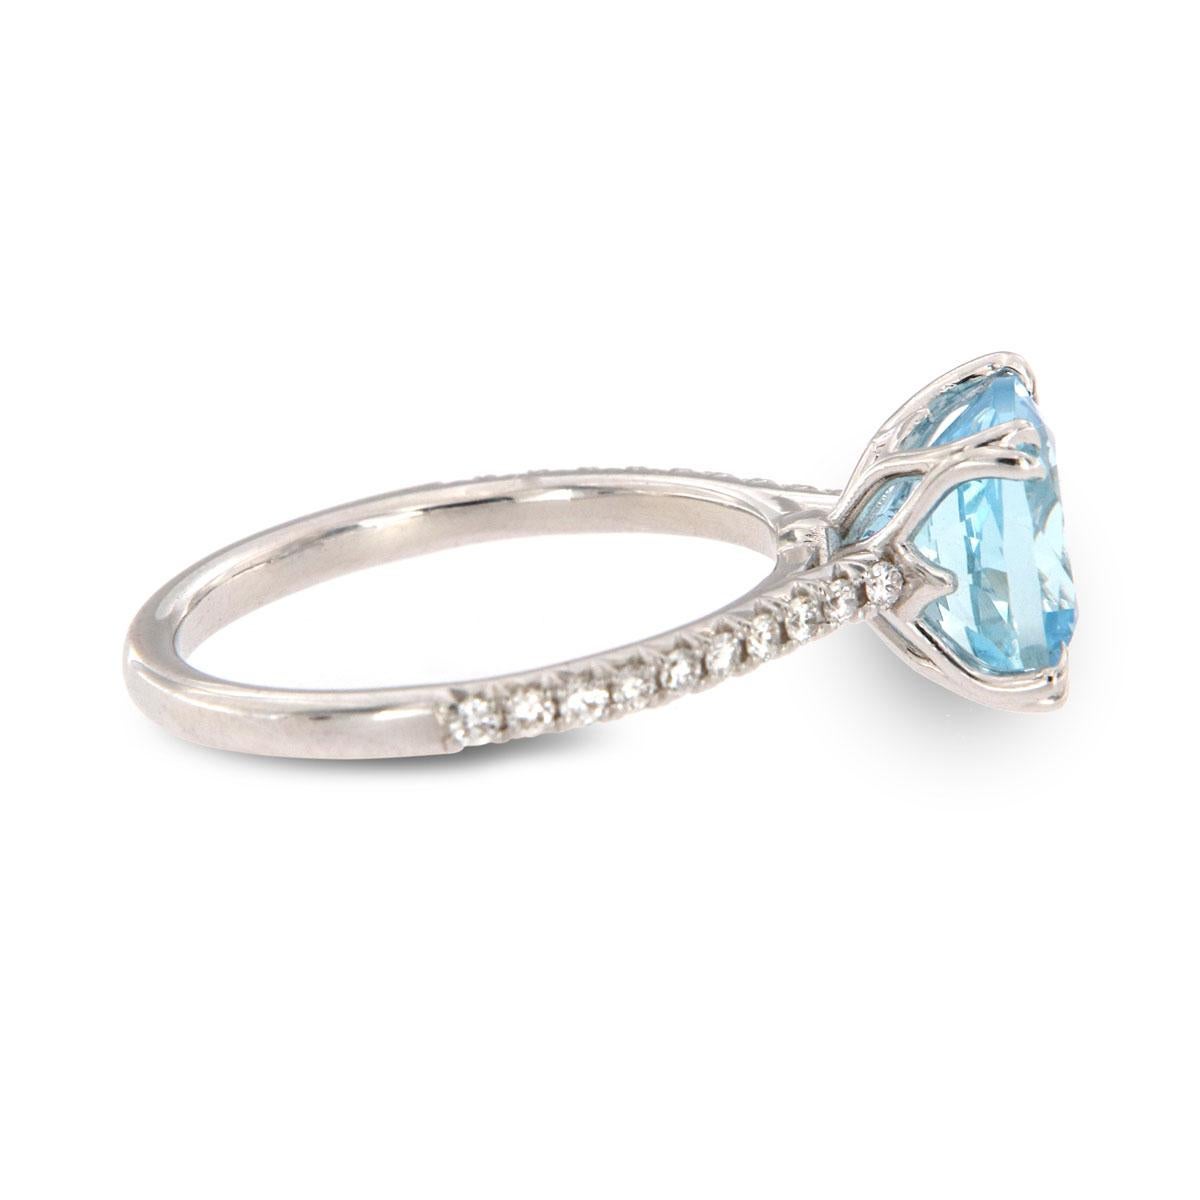 5 carat aquamarine ring